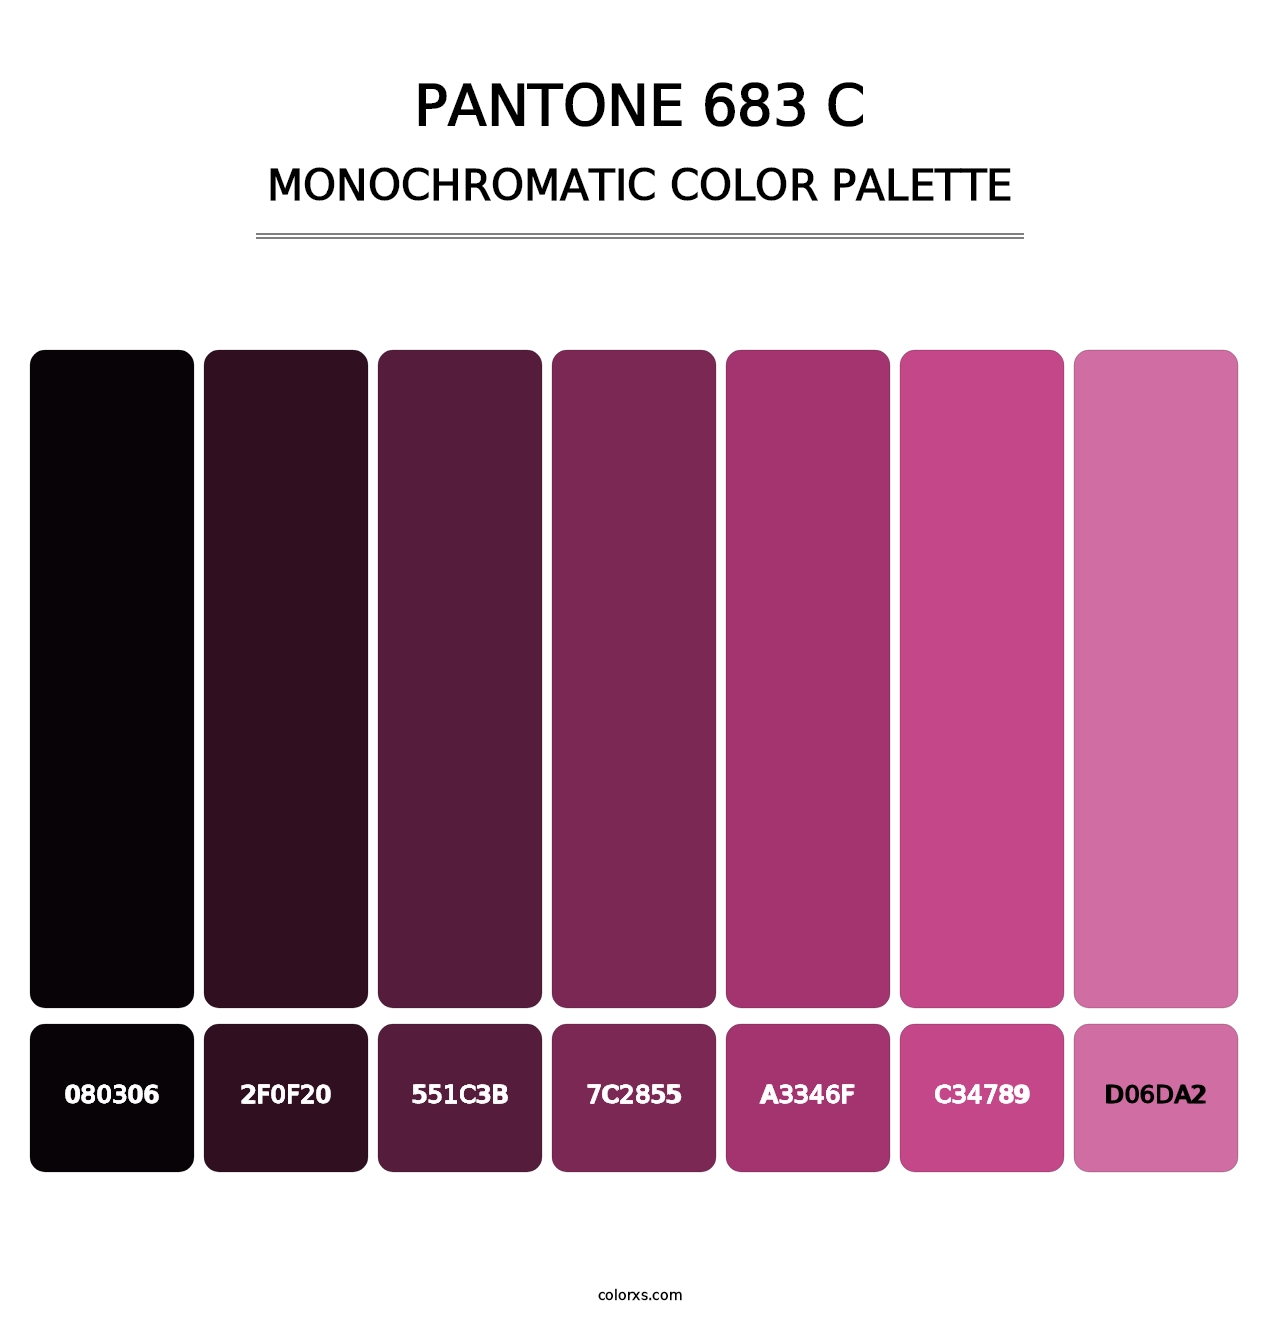 PANTONE 683 C - Monochromatic Color Palette